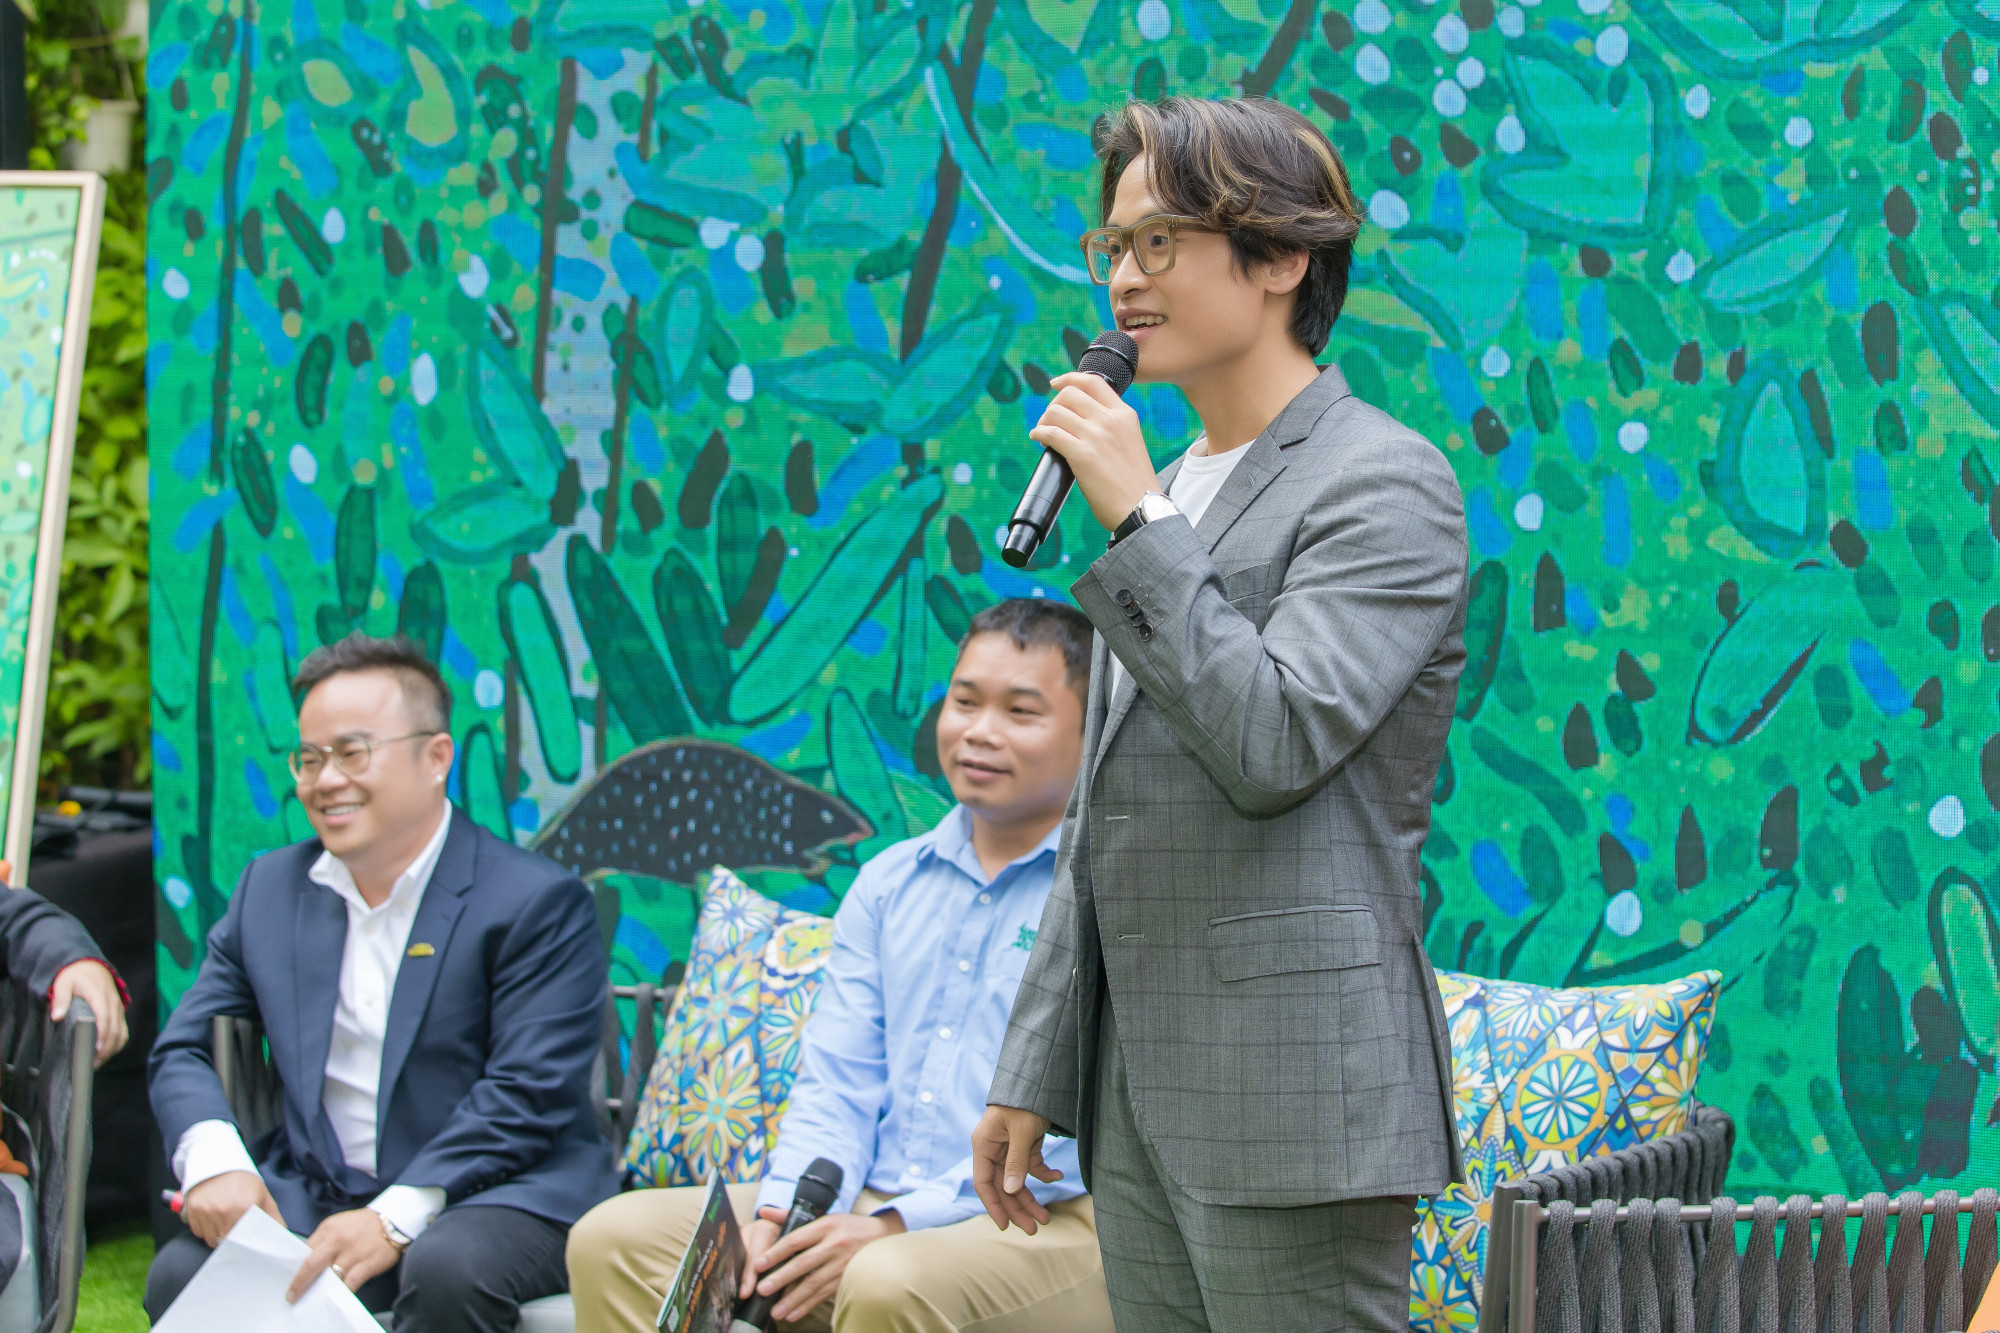 Ca sĩ Hà Anh Tuấn trong buổi chia sẻ về kế hoạch hợp tác mở rộng việc trồng rừng trong thời gian tới